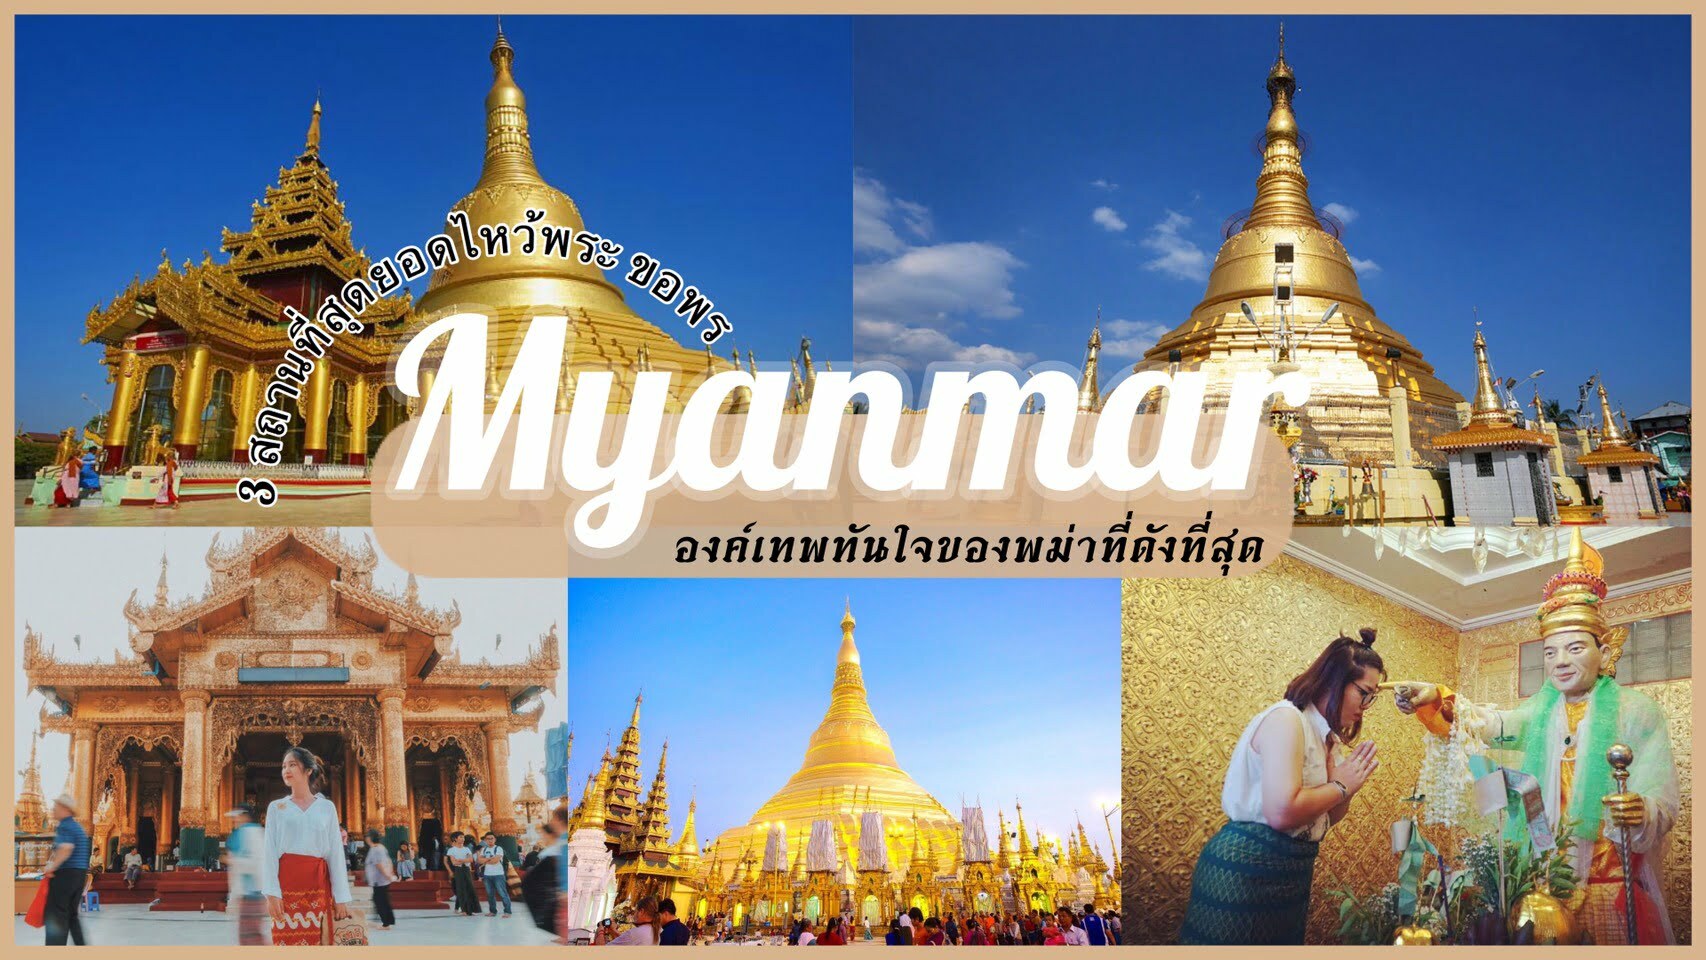 ทัวร์พม่า – 3 สถานที่สุดยอด องค์เทพทันใจพม่า ที่ควรค่าแก่การไปขอพรให้ได้!